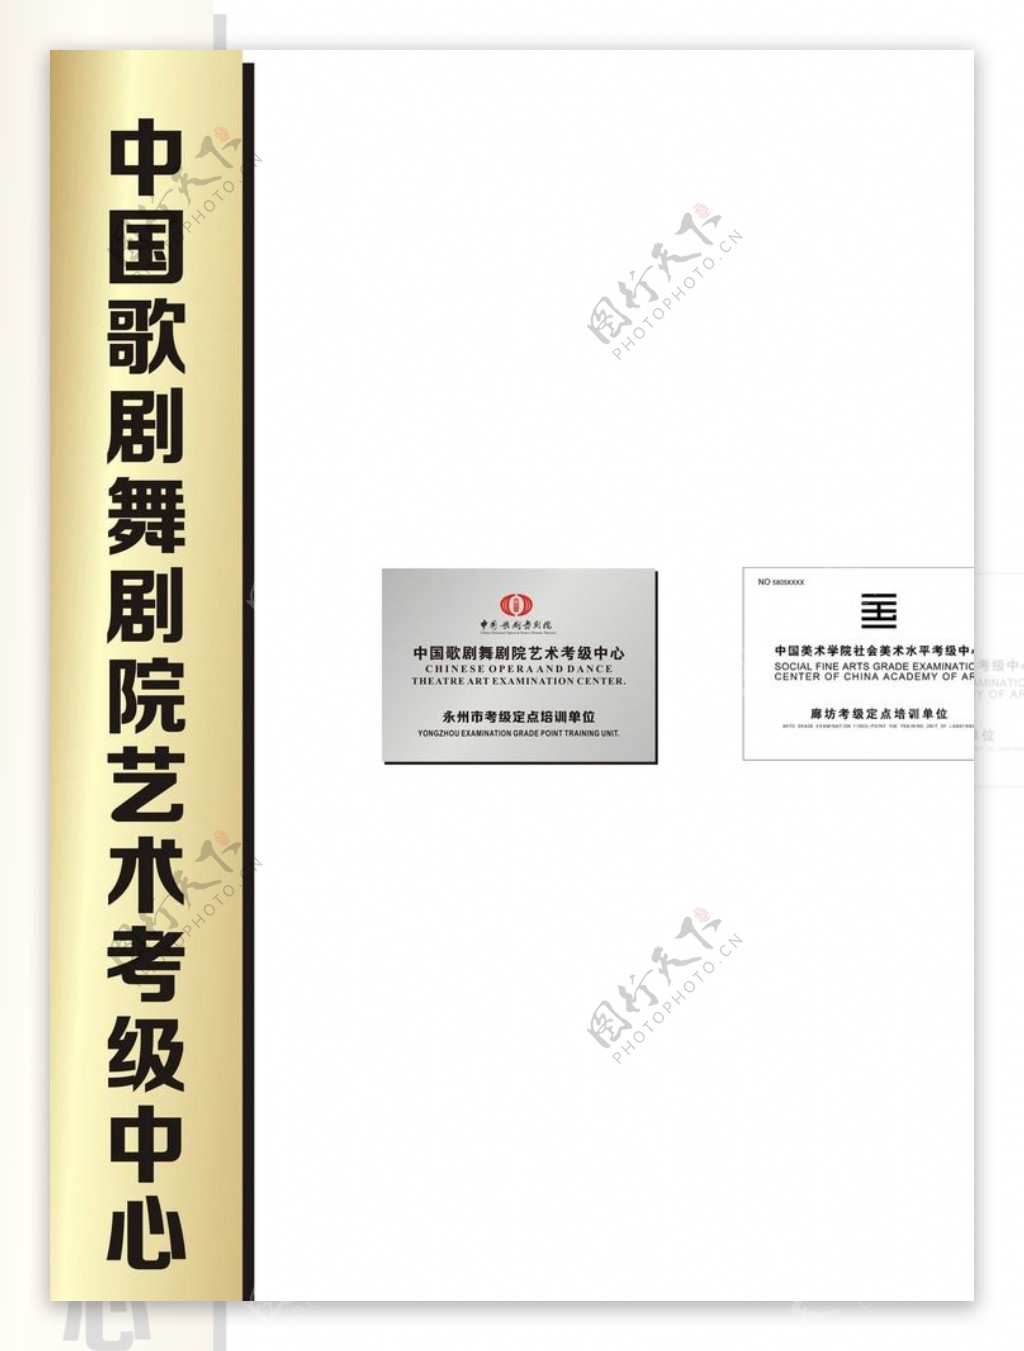 中国歌剧舞剧院艺术考级中心广告